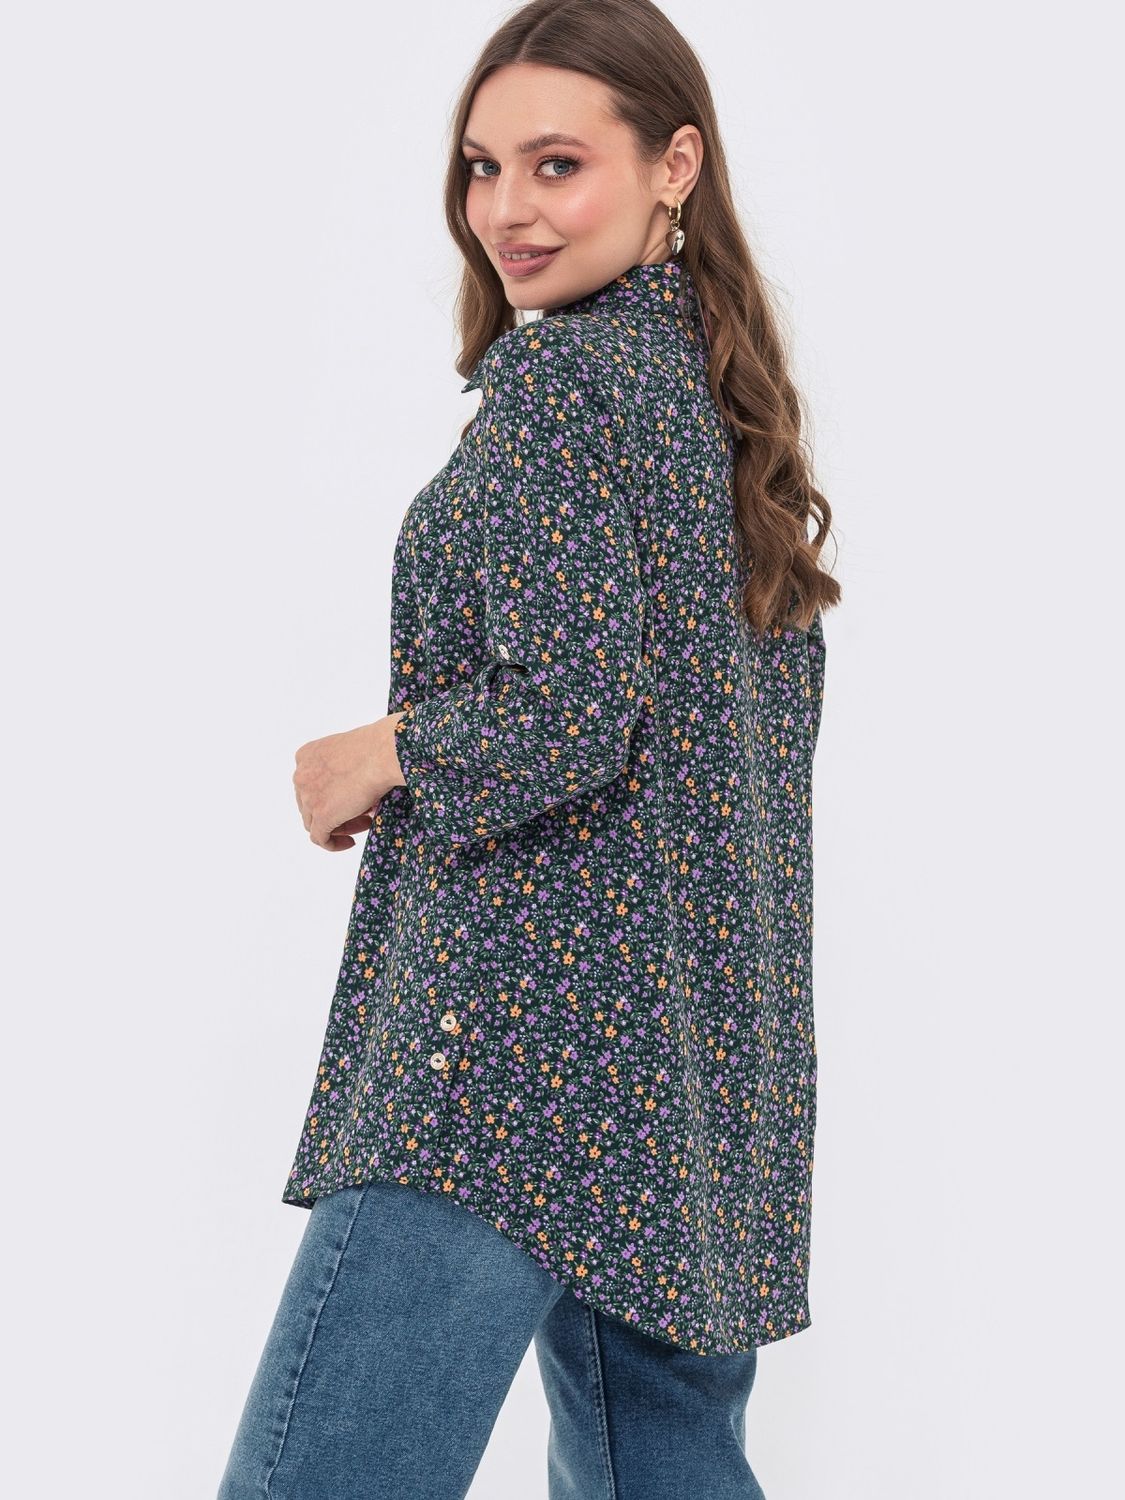 Женская рубашка с цветочным принтом - фото